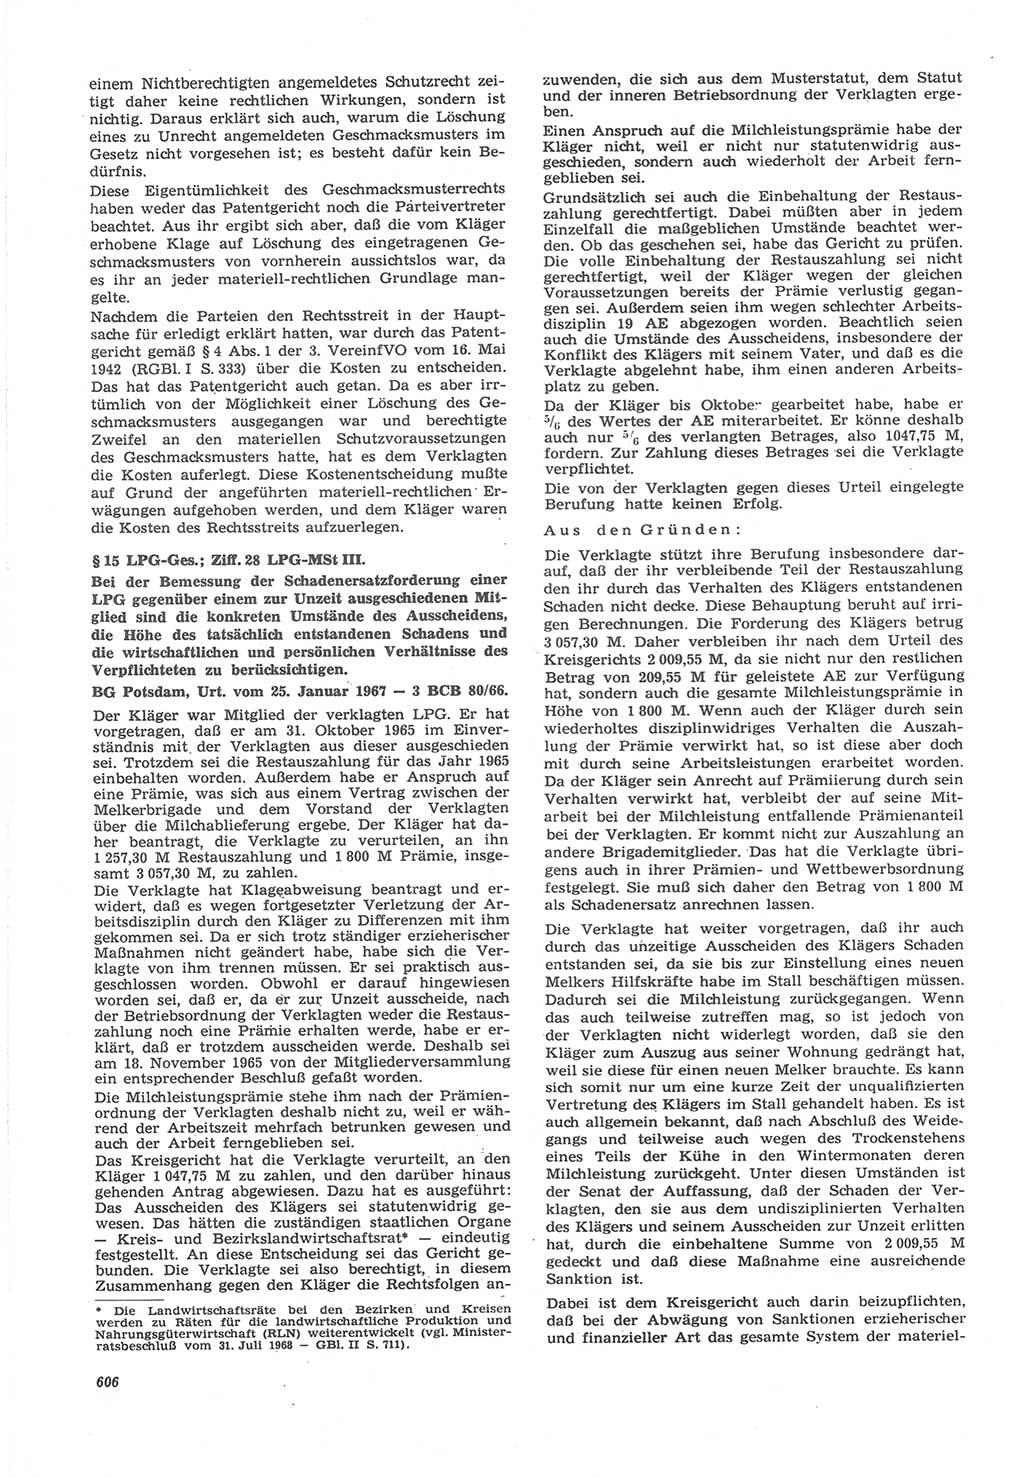 Neue Justiz (NJ), Zeitschrift für Recht und Rechtswissenschaft [Deutsche Demokratische Republik (DDR)], 22. Jahrgang 1968, Seite 606 (NJ DDR 1968, S. 606)